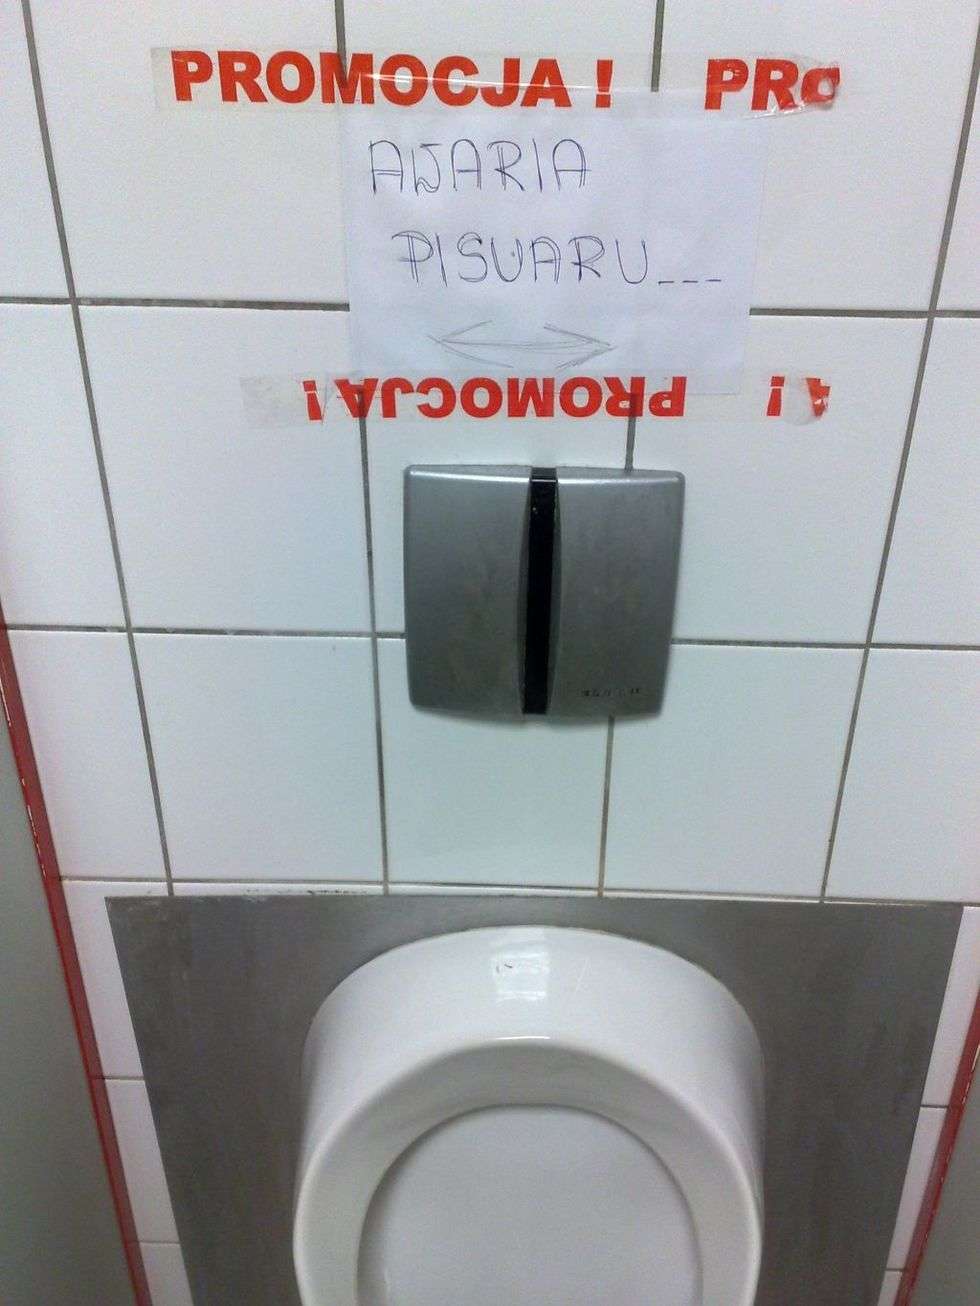  Na taką "promocje" mogą natrafic klienci hipermarketu Real w Lublinie, którzy udadzą sie do toalety.